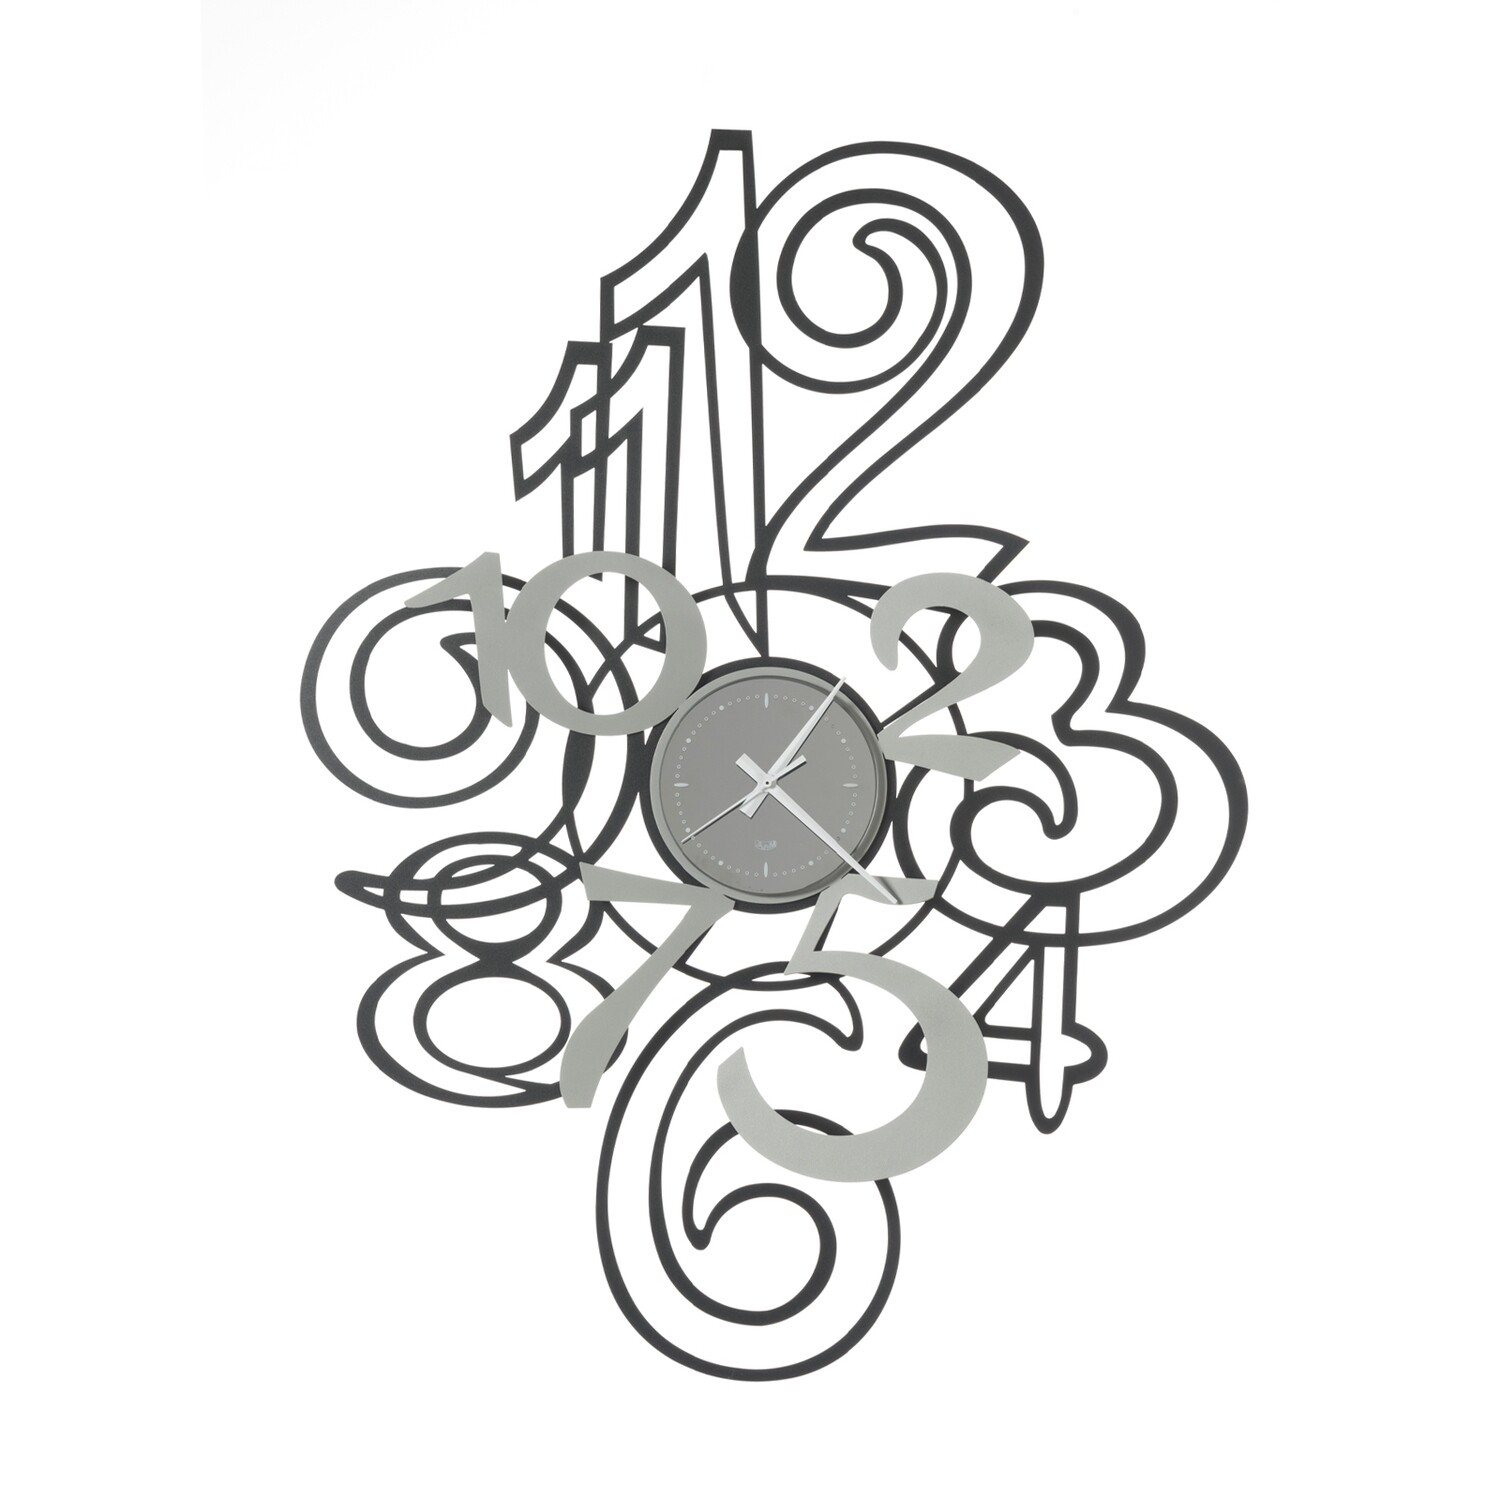 Orologio da Parete moderno con numeri sovrapposti mod. Profile Marca Arti e Mestieri